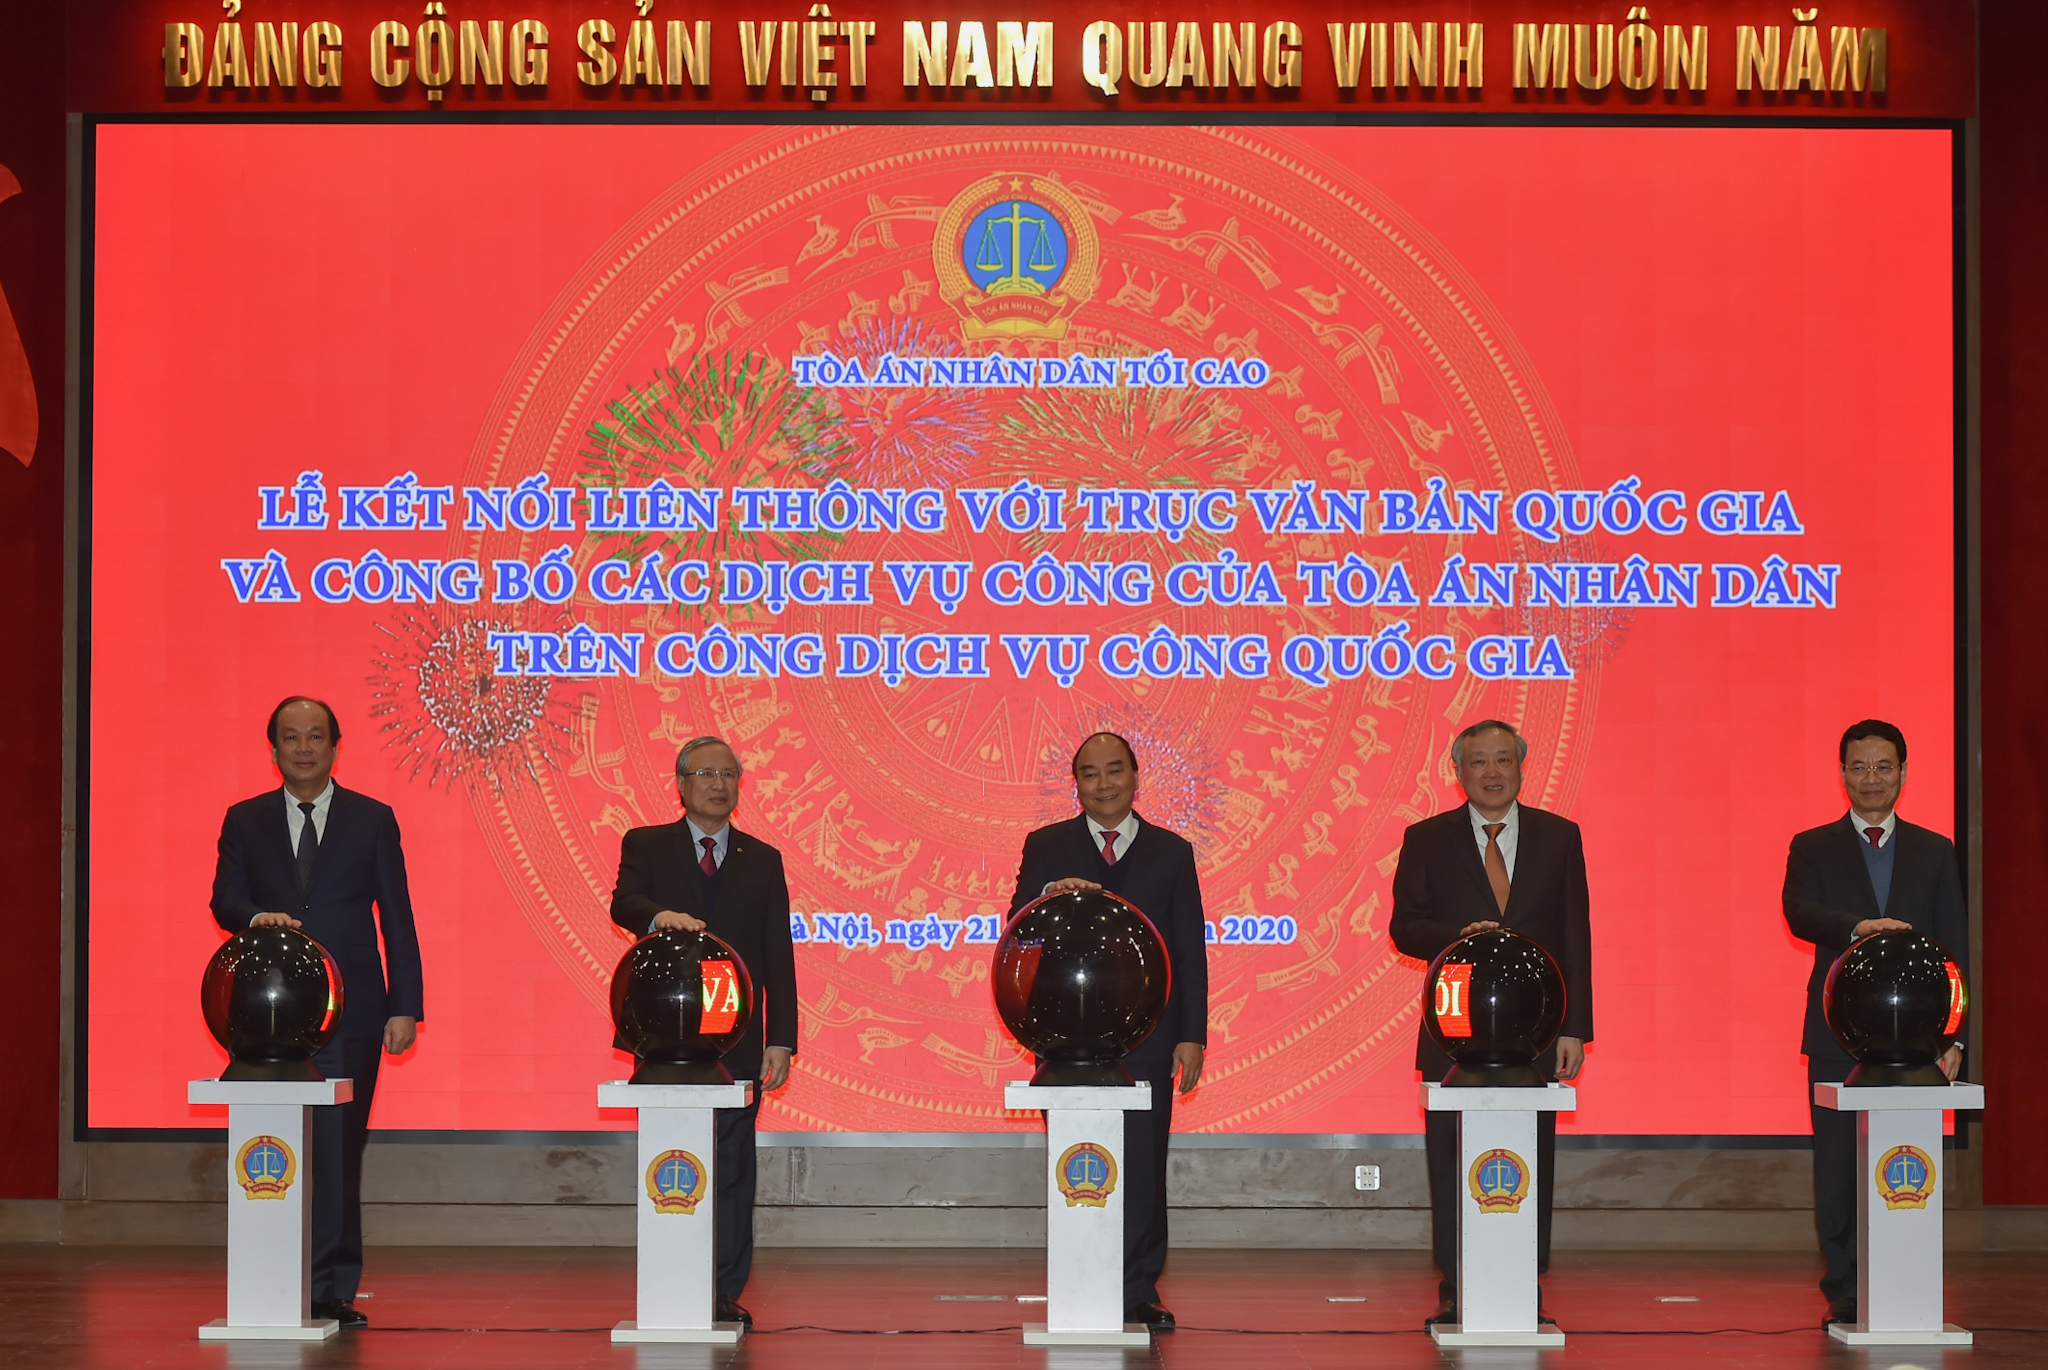 Thủ tướng và các đại biểu thực hiện nghi thức công bố Cổng dịch vụ công TAND trên Cổng dịch vụ công quốc gia - Ảnh: VGP/Quang Hiếu